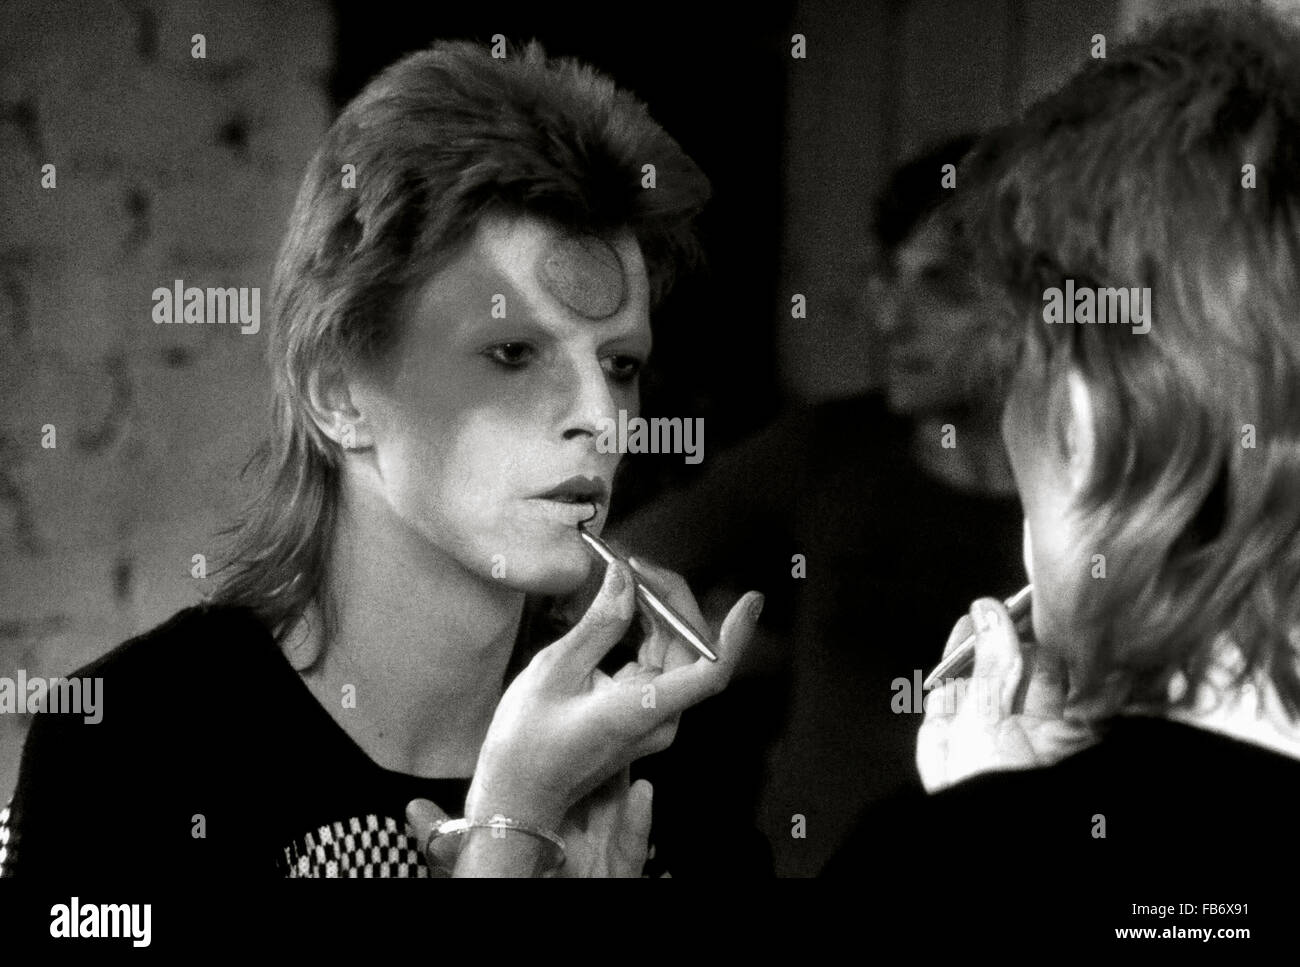 Lewisham, Londra, Inghilterra, Regno Unito. 22 maggio 1973. David Bowie applicando Ziggy Stardust trucco in spogliatoio dietro le quinte. Il suo chitarrista Mick Ronson è dietro di lui e si vede riflessa nello specchio. Roger Bamber/Alamy Live News Foto Stock